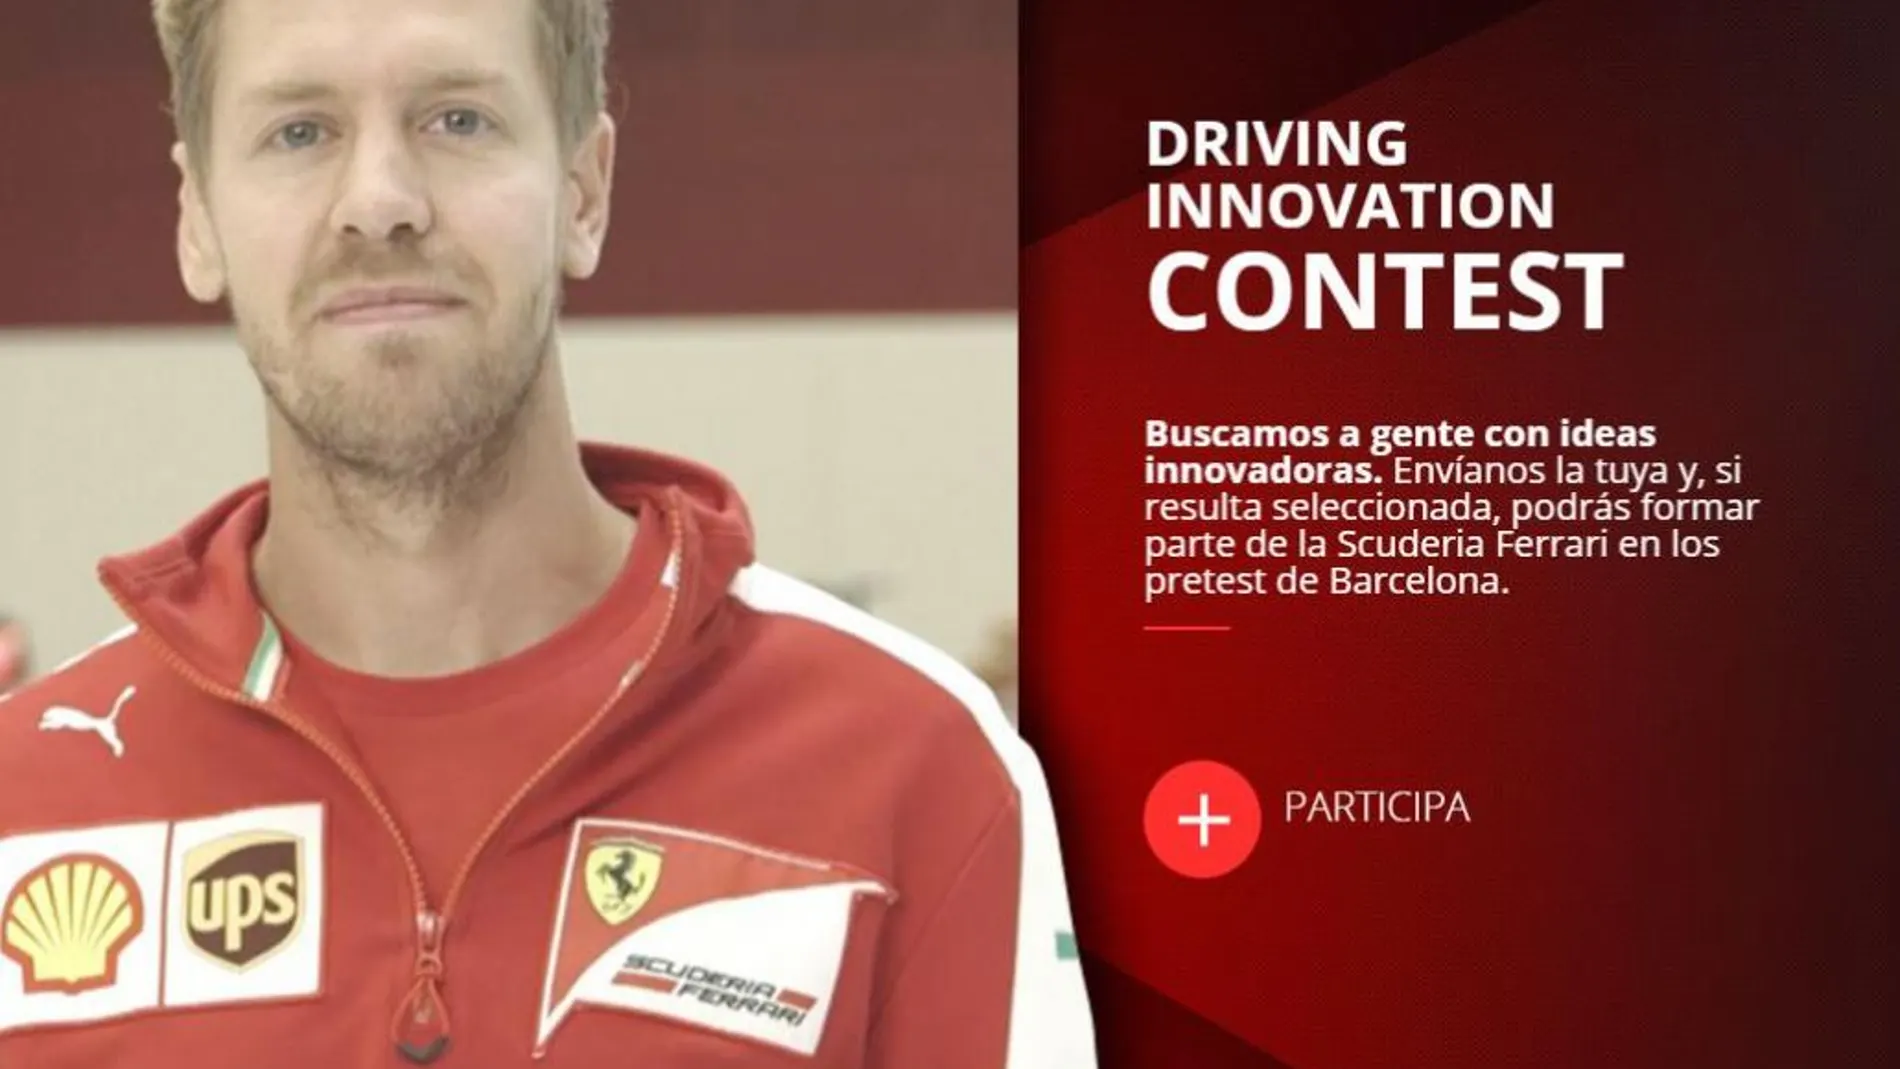 ¿Quieres formar parte de la Scuderia Ferrari por un día?